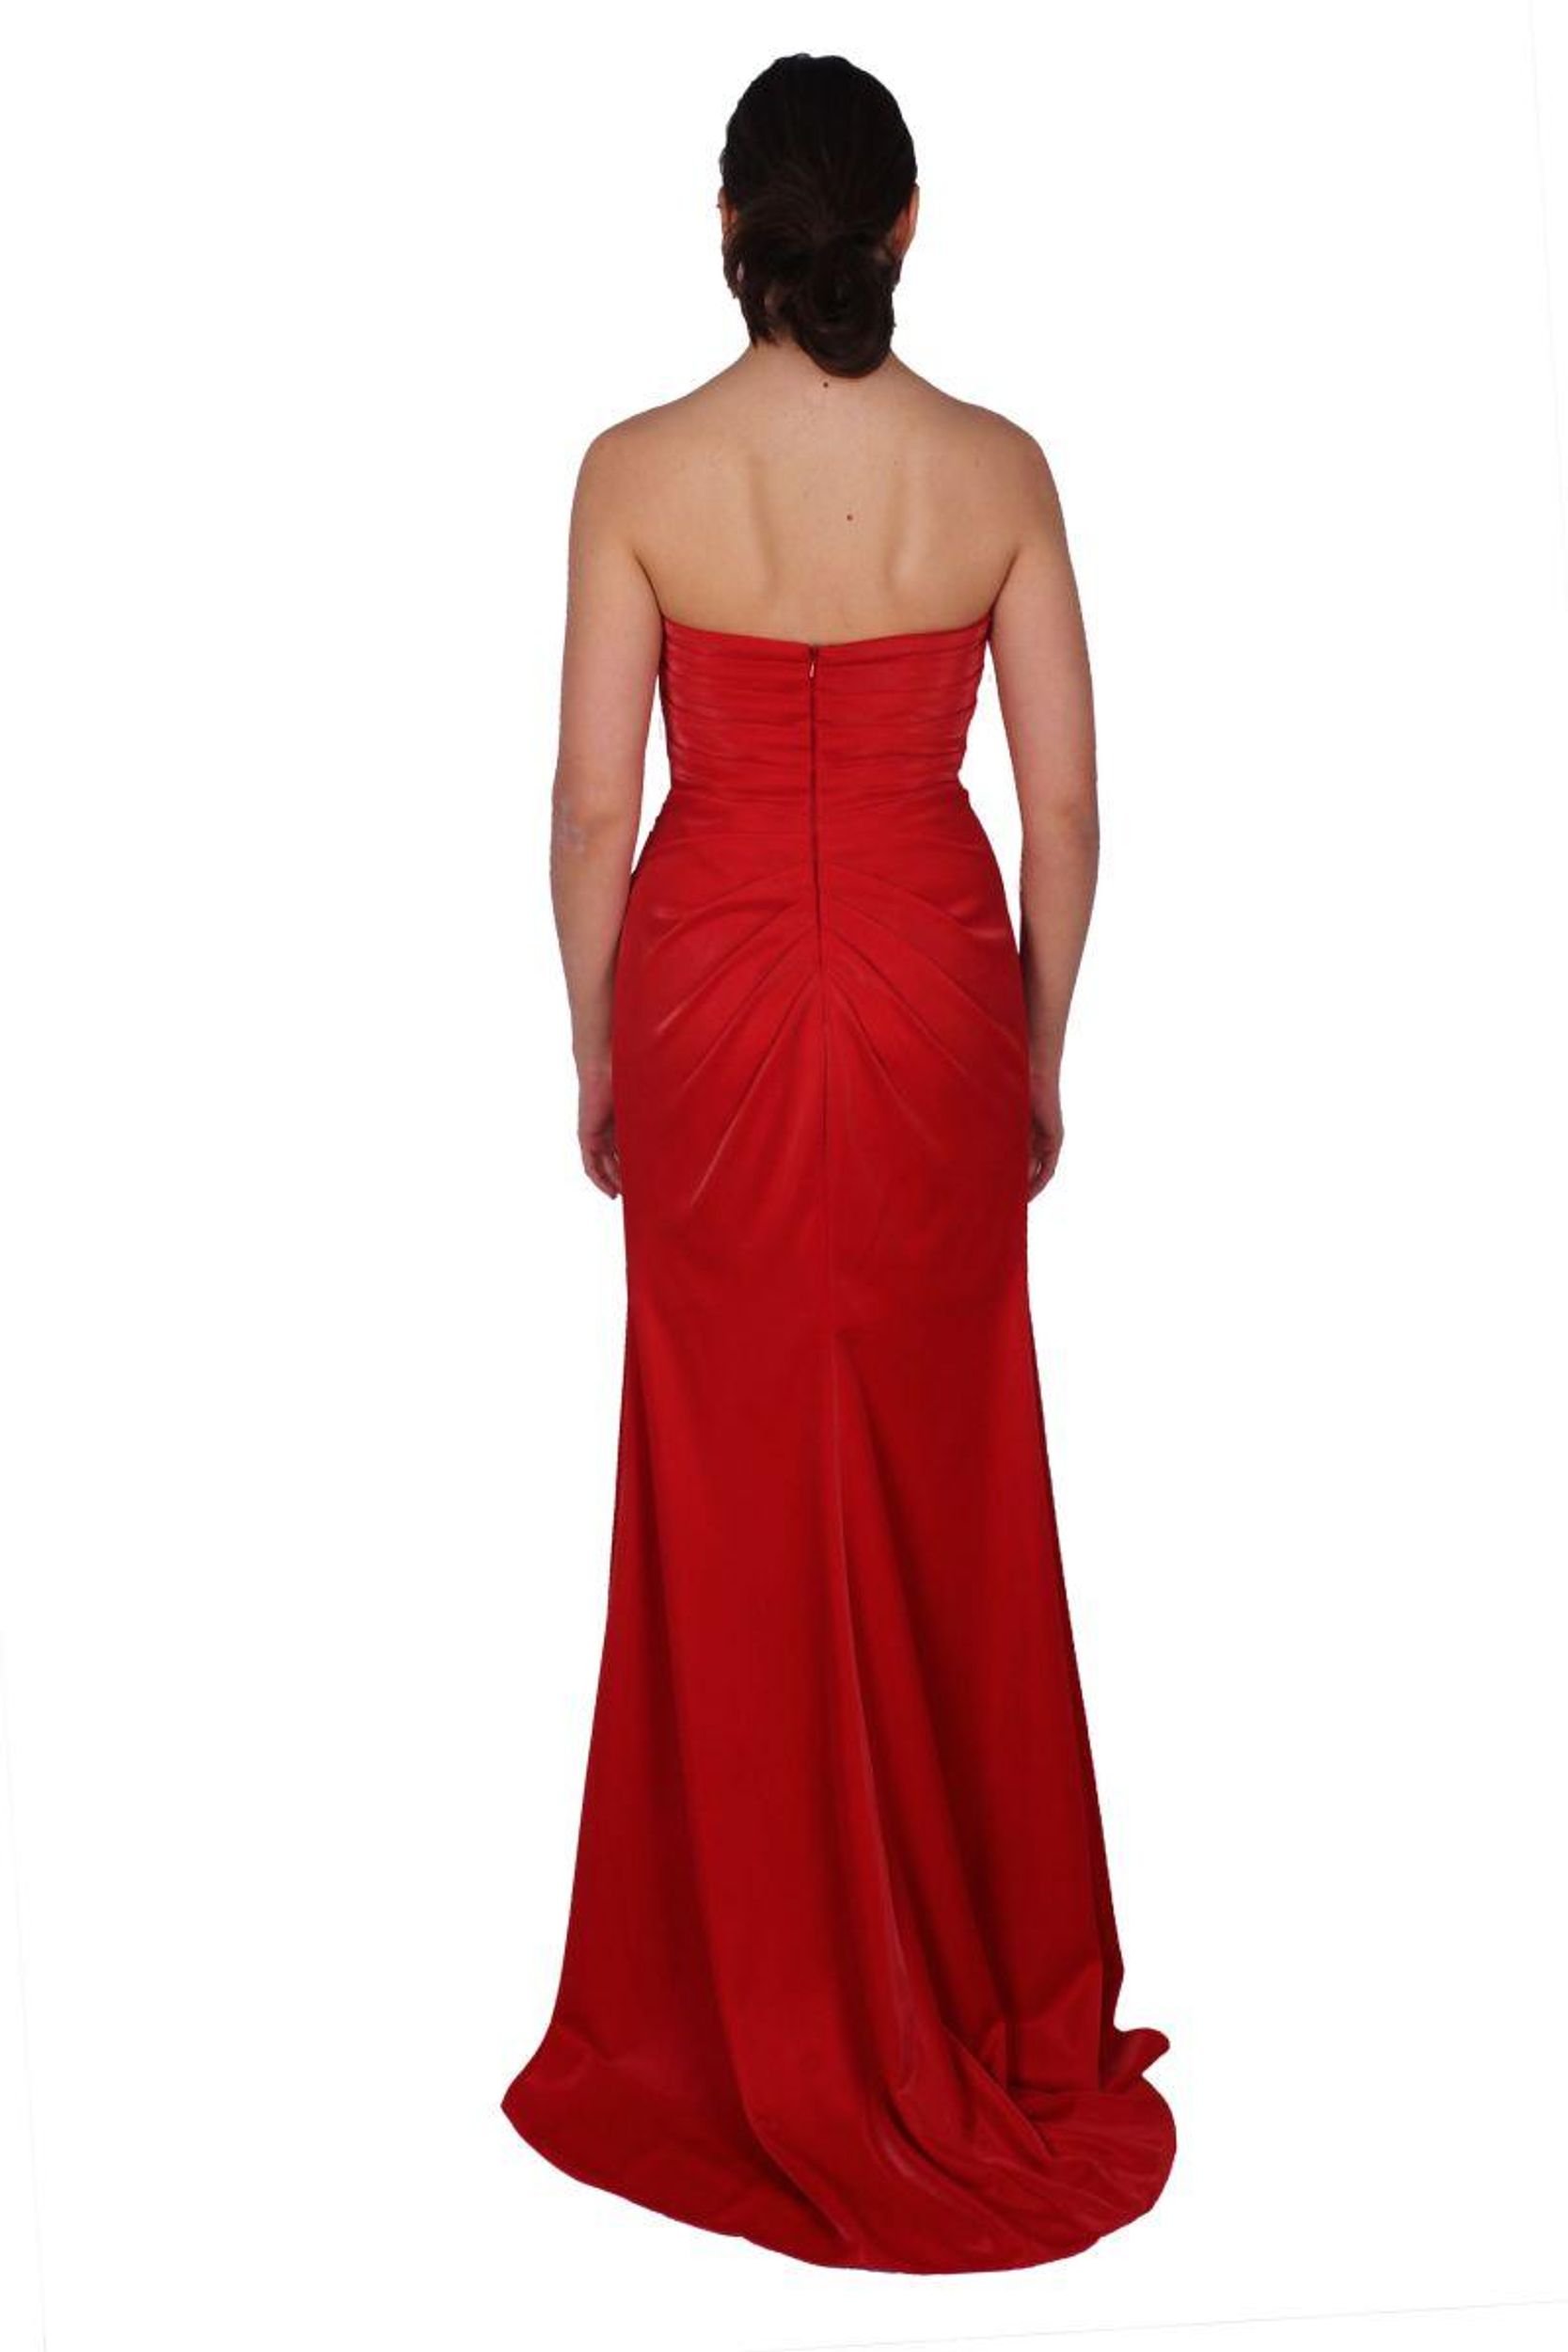 "Rotes Abendkleid von Luxuar: Elegant und Luxuriös"